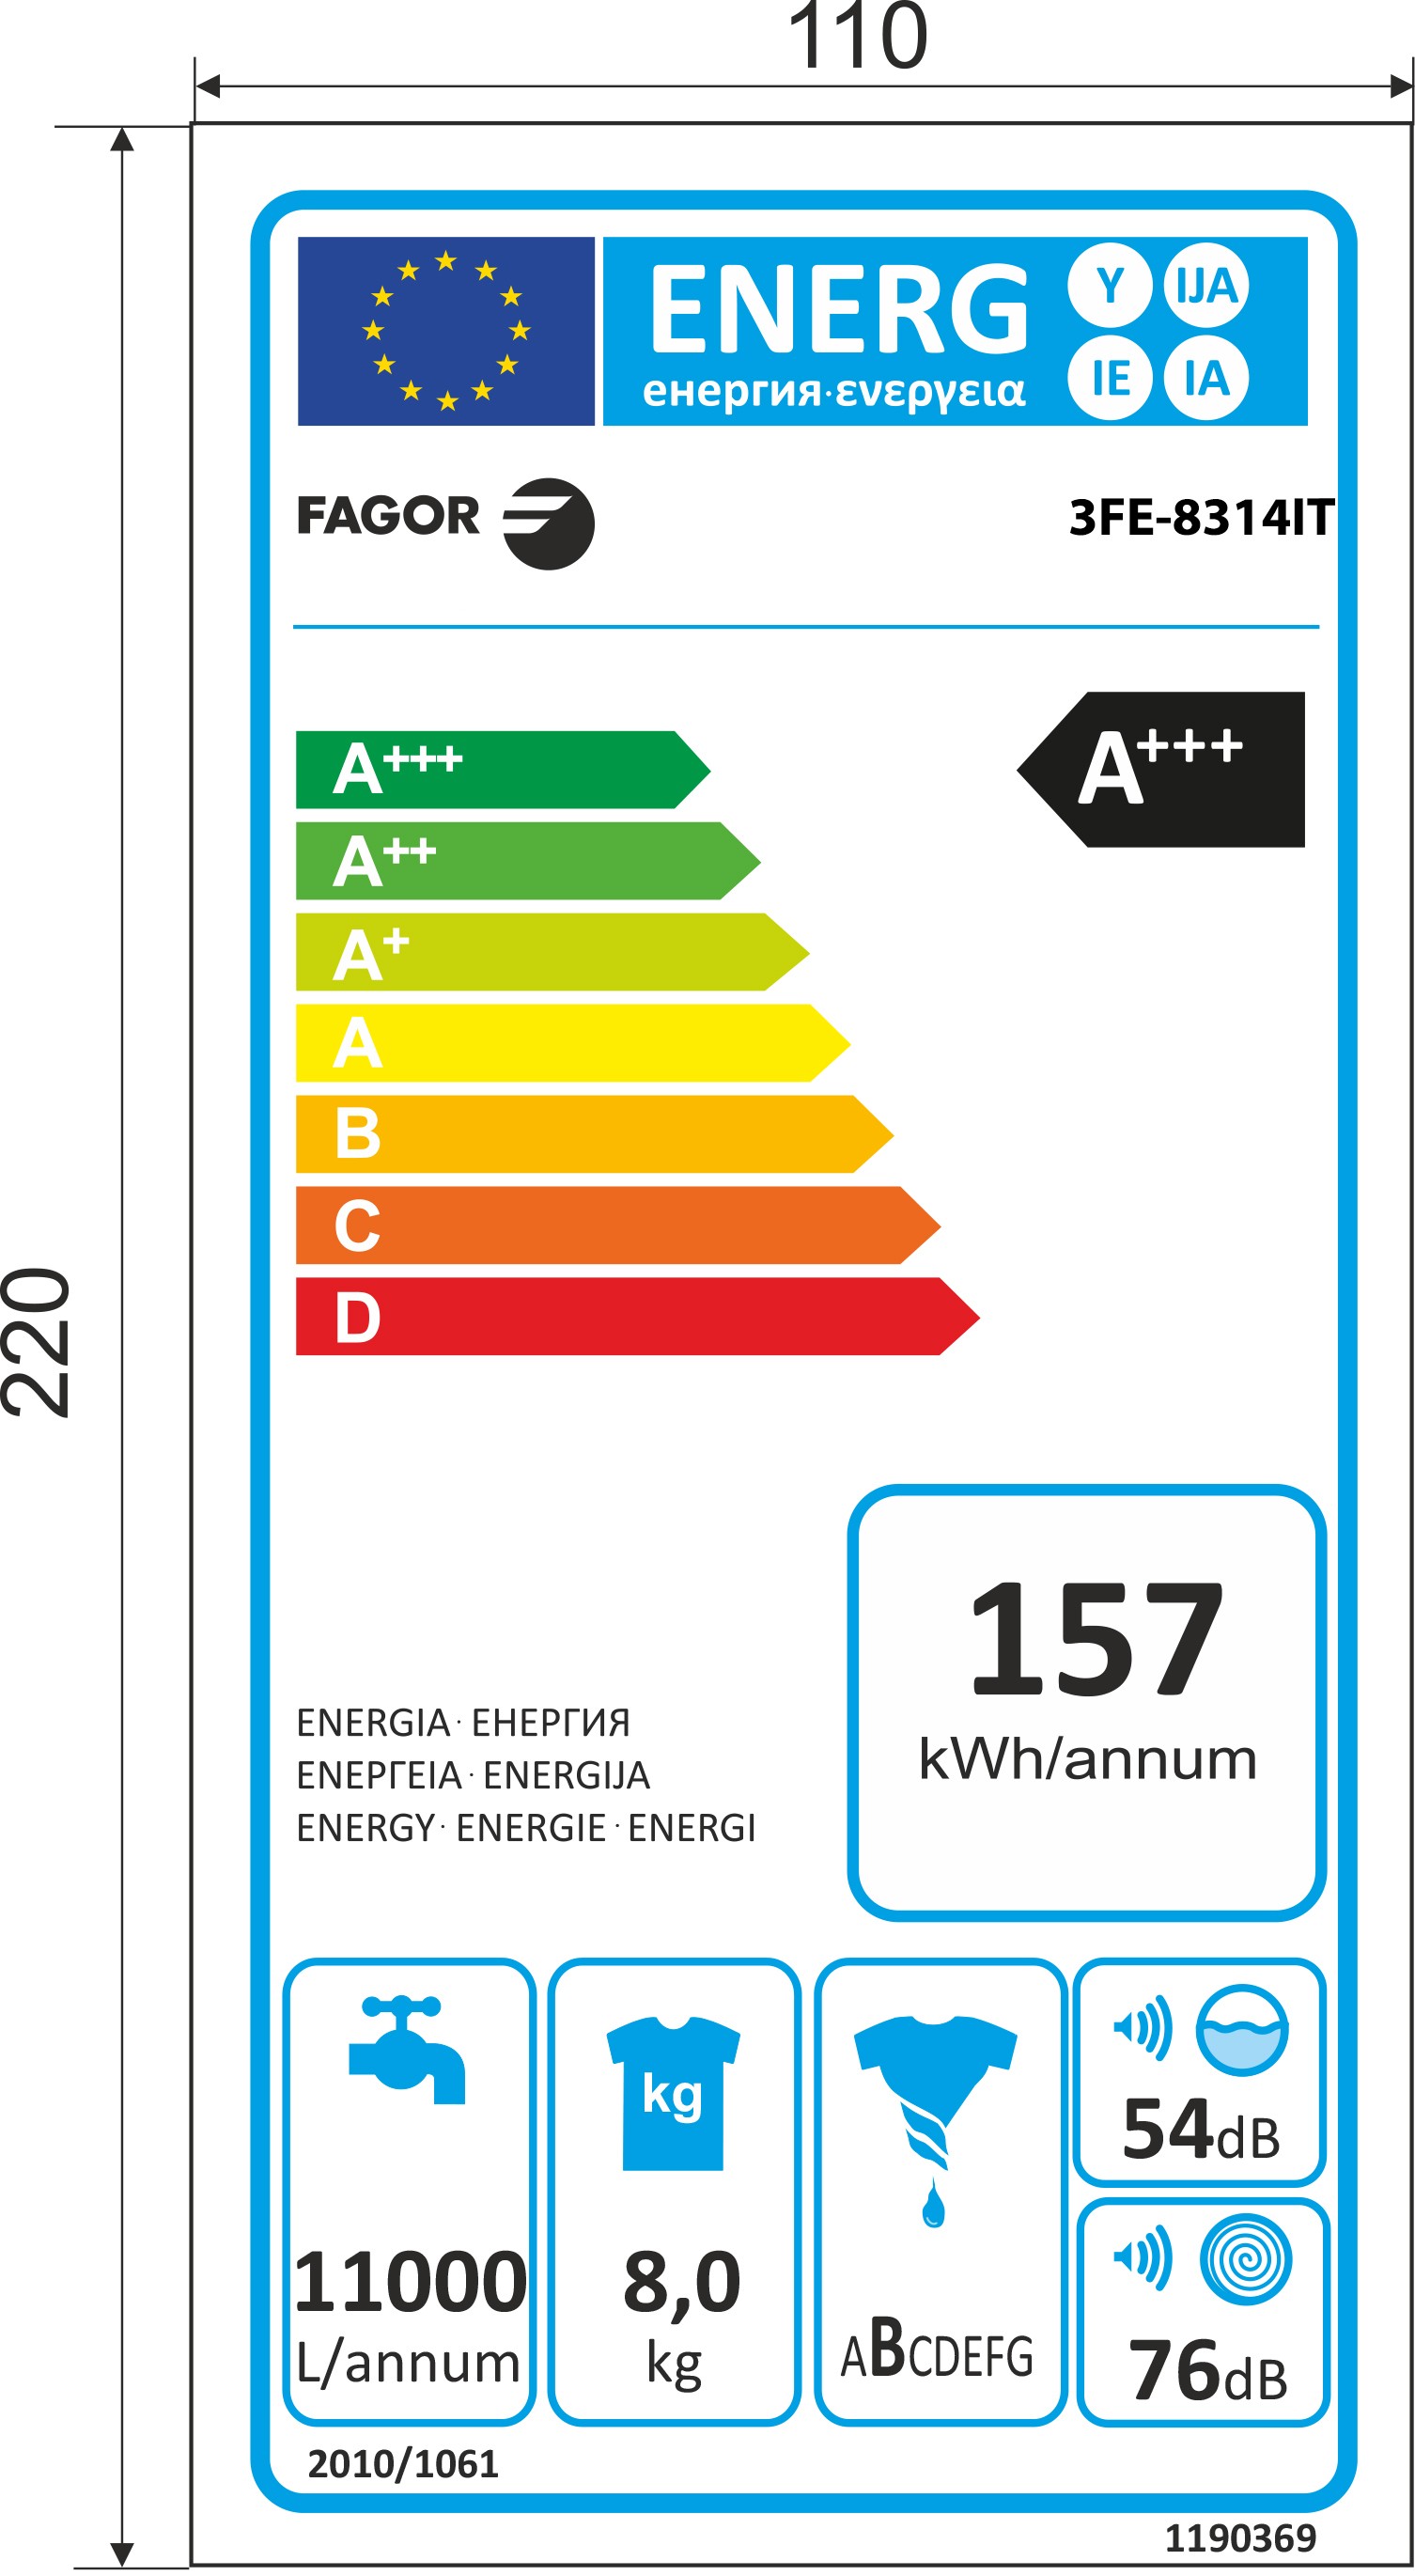 Etiqueta de Eficiencia Energética - 3FE-8314IT